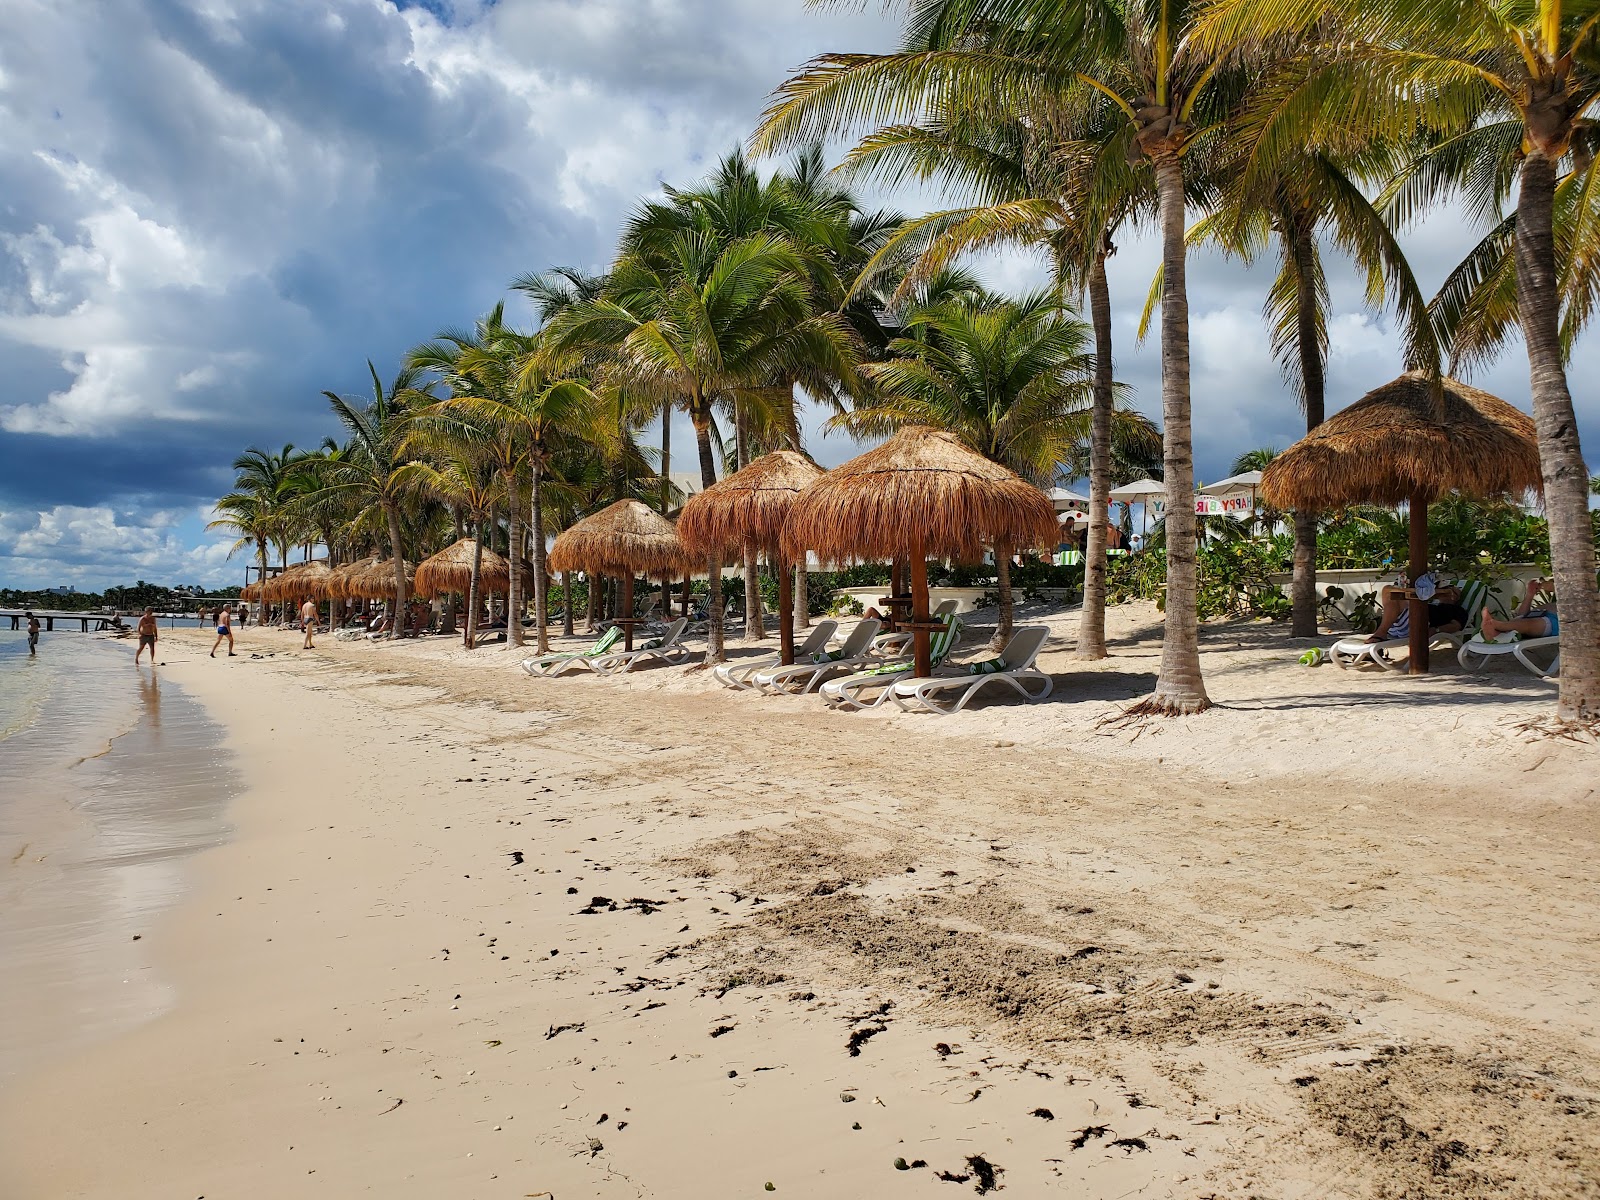 Fotografie cu Hyatt Ziva Riviera Cancun cu o suprafață de nisip strălucitor